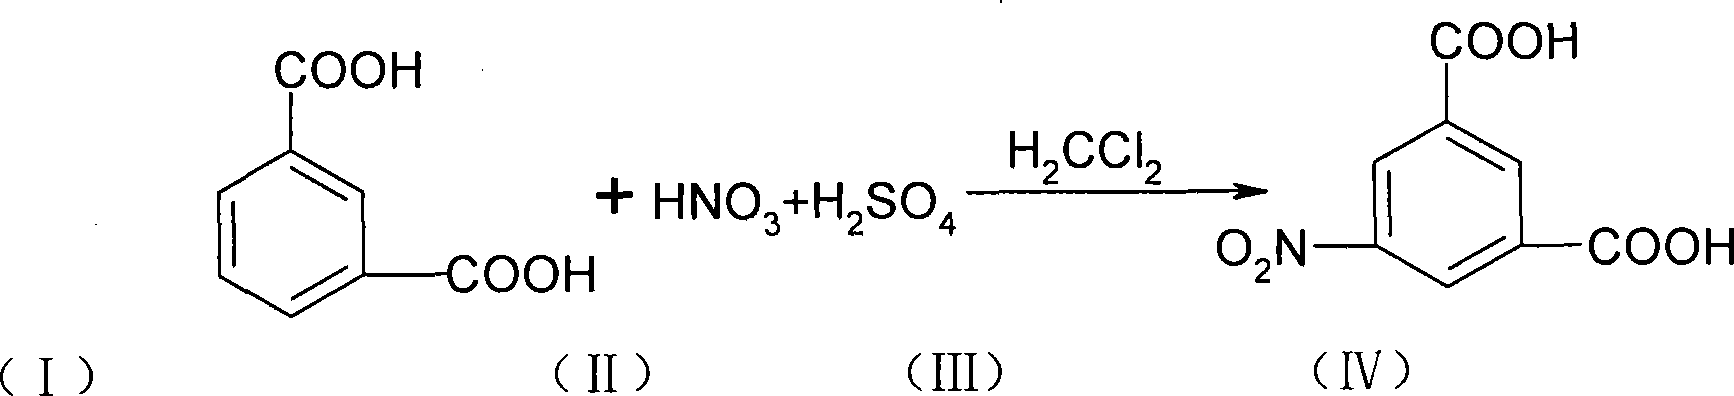 Method for producing 5-nitryl isophthalic acid